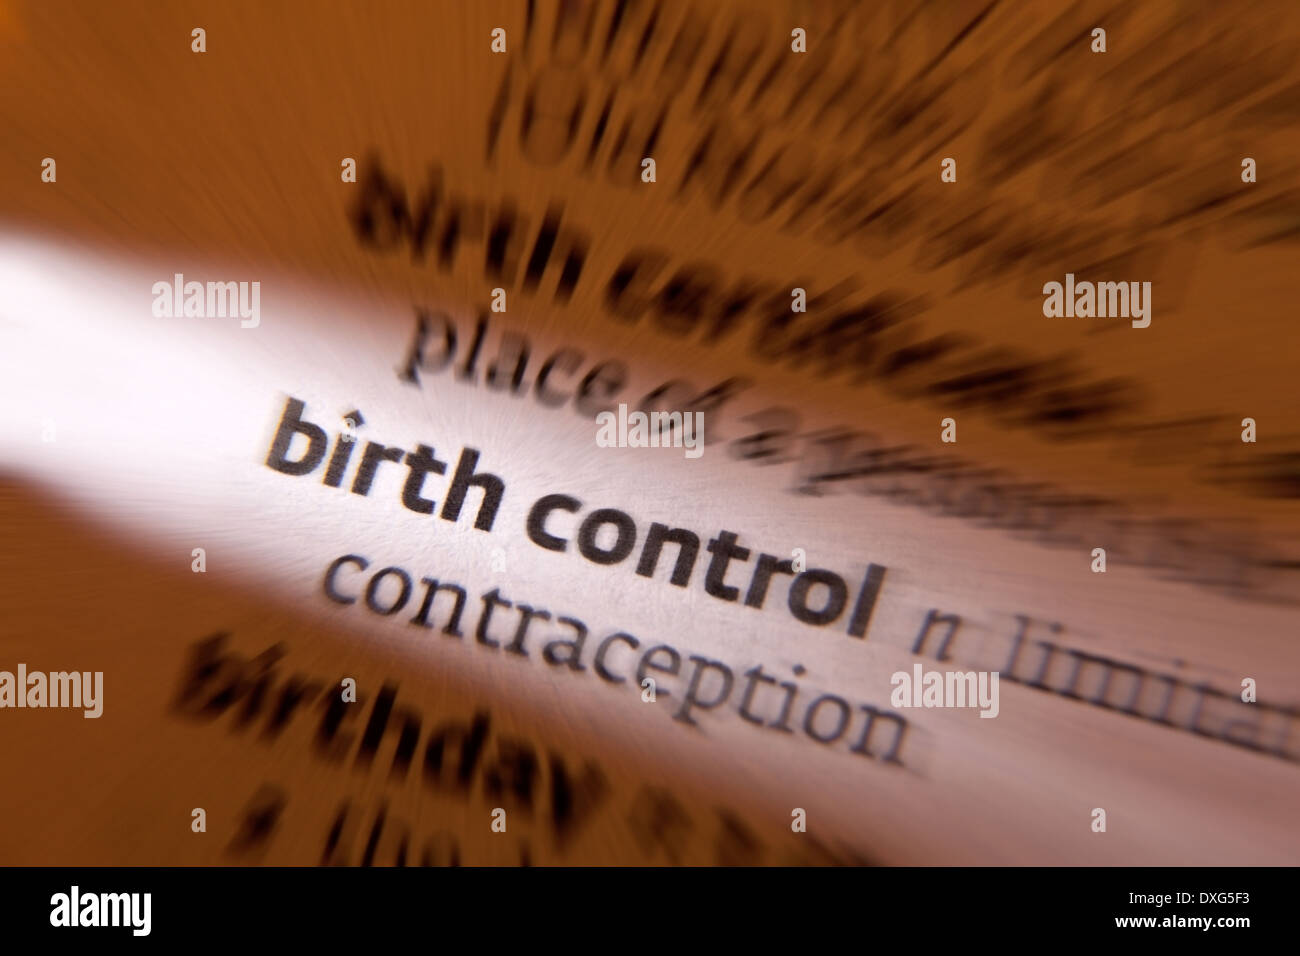 El control de la natalidad, la práctica de la prevención de los embarazos no deseados, normalmente mediante el uso de la anticoncepción. Foto de stock